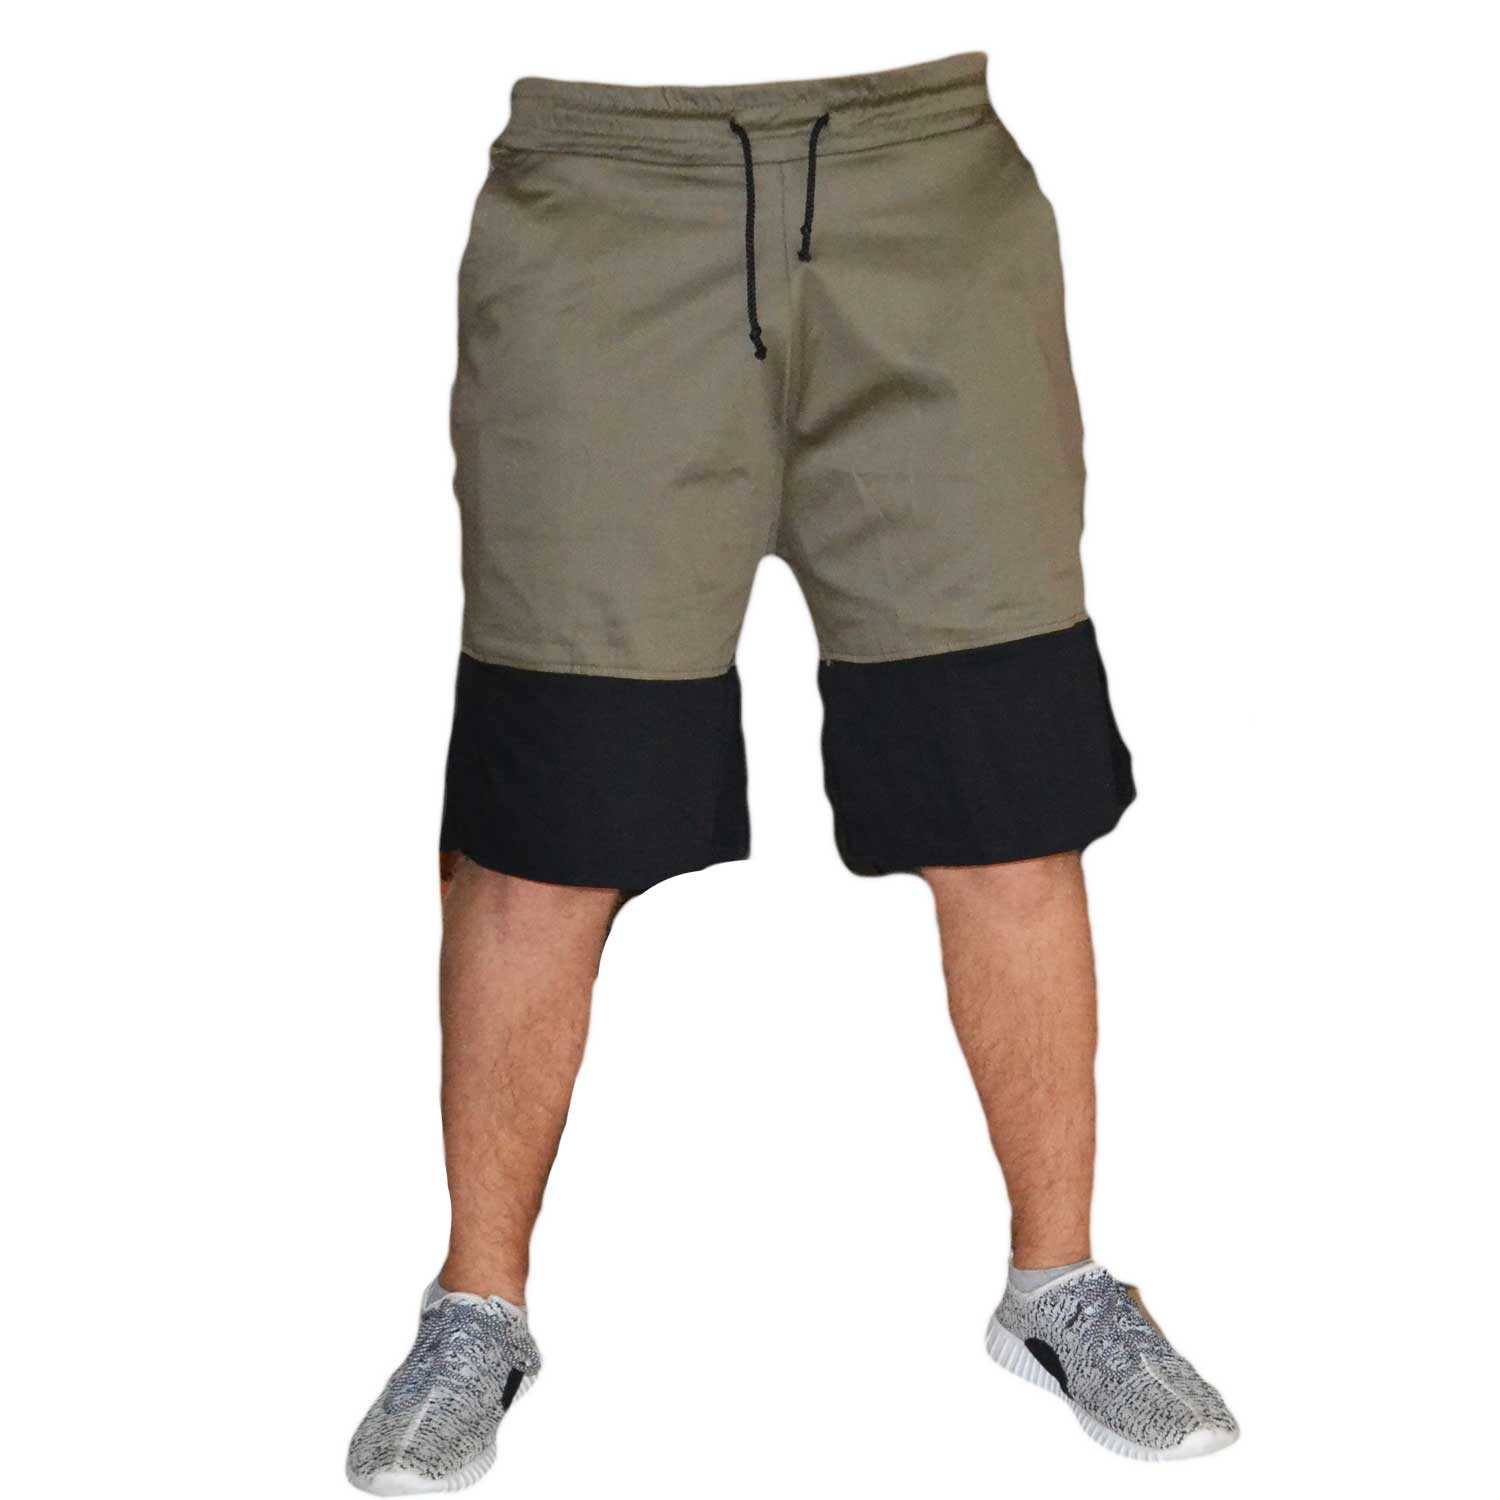 Abbigliamento Uomo Pantaloni Corti Shorts Verde Militare Nero uomo ...